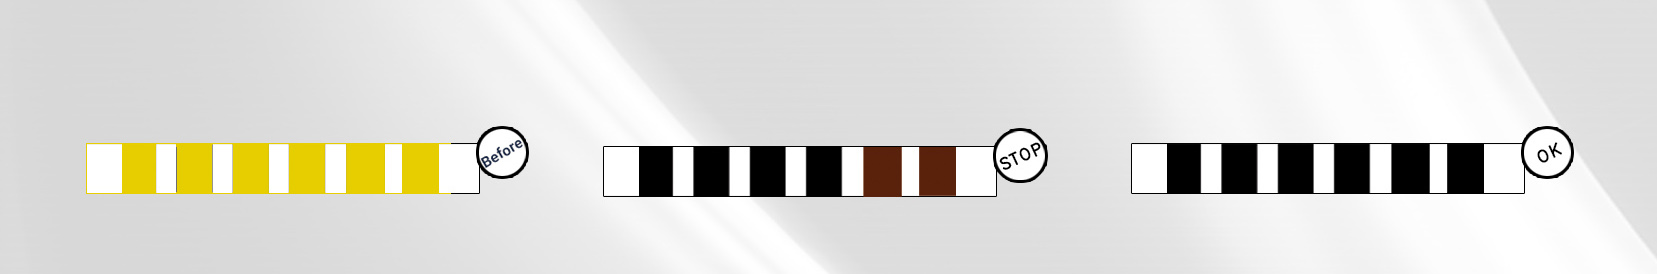 تغيير الألوان في ماركر بوي - ديك لولبية (11220-14 RRS)